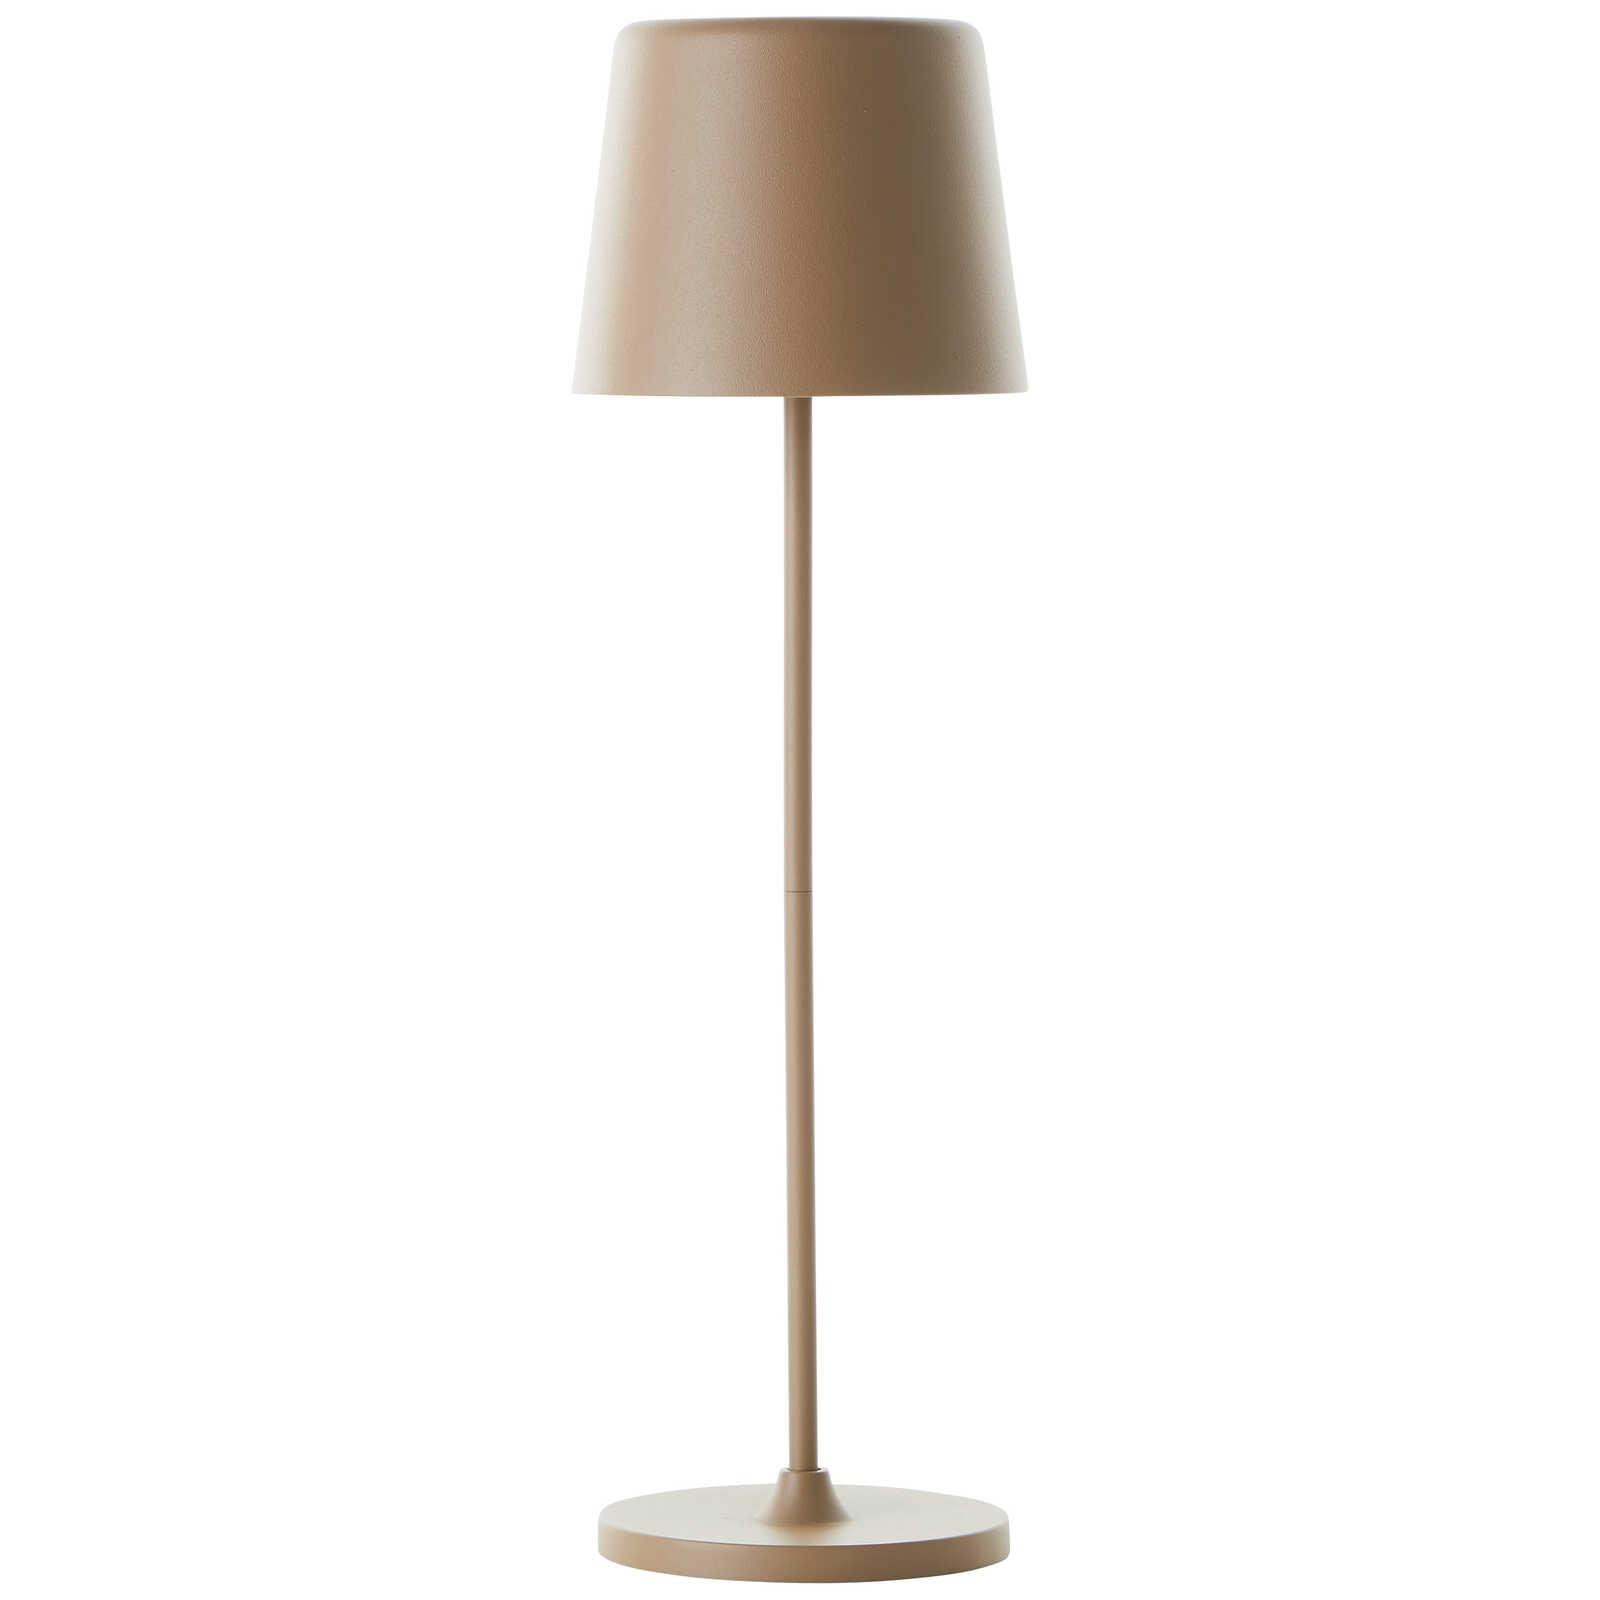             Metal table lamp - Cosy 3 - Brown
        